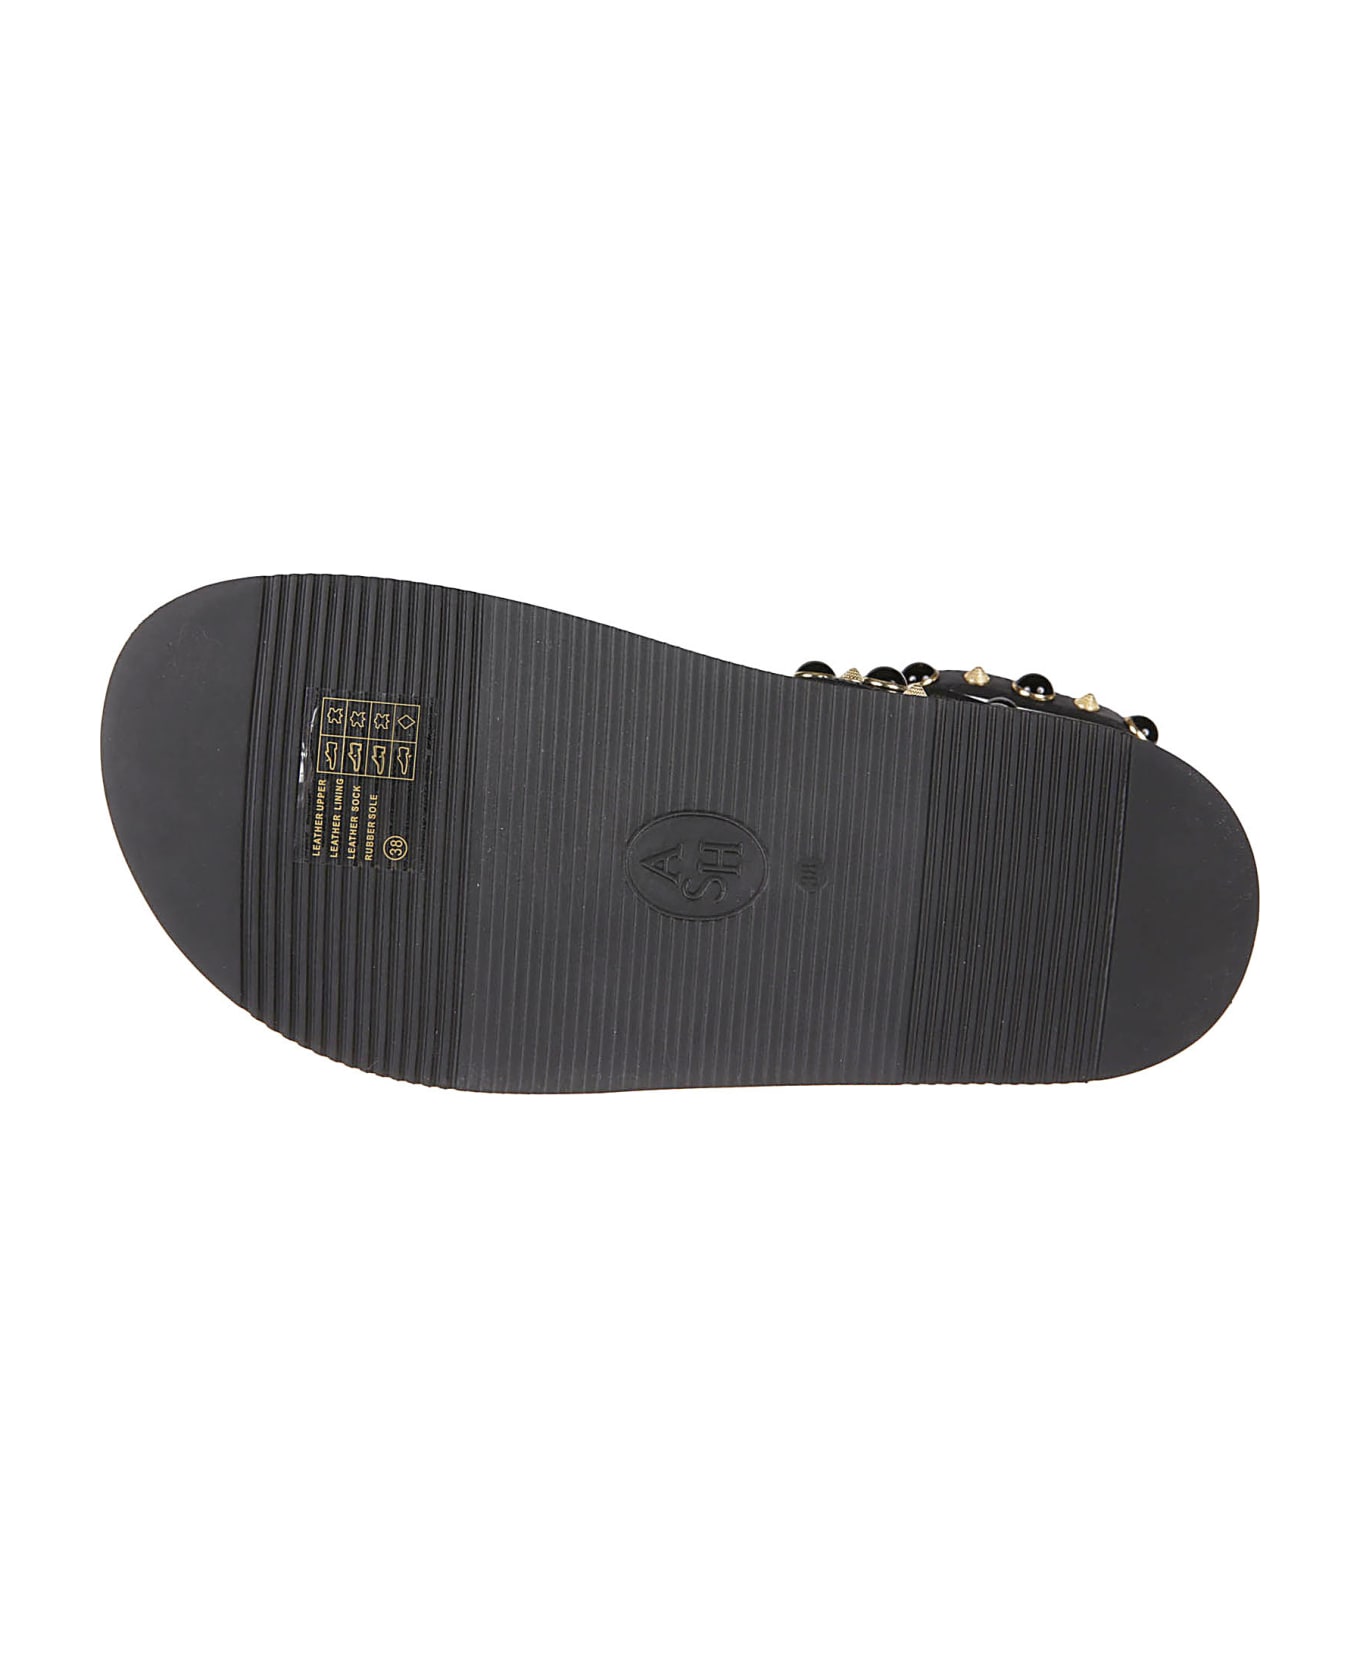 Ash Upup Sandals - Black/gold